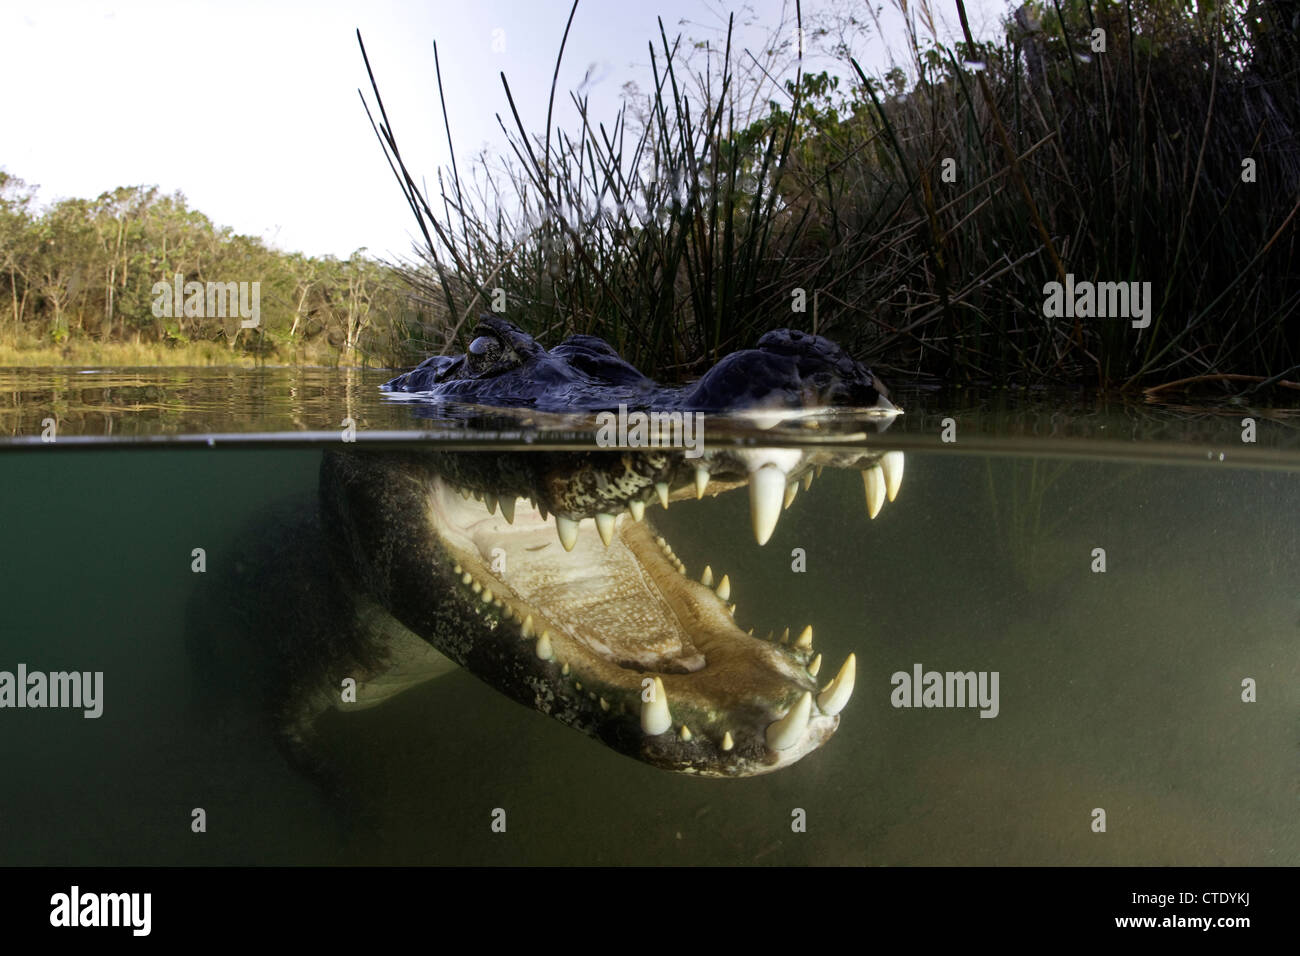 Spectacled Caiman, Caiman crocodilus, Rio Baia Bonita, Bonito, Mato Grosso do Sul, Brazil Stock Photo